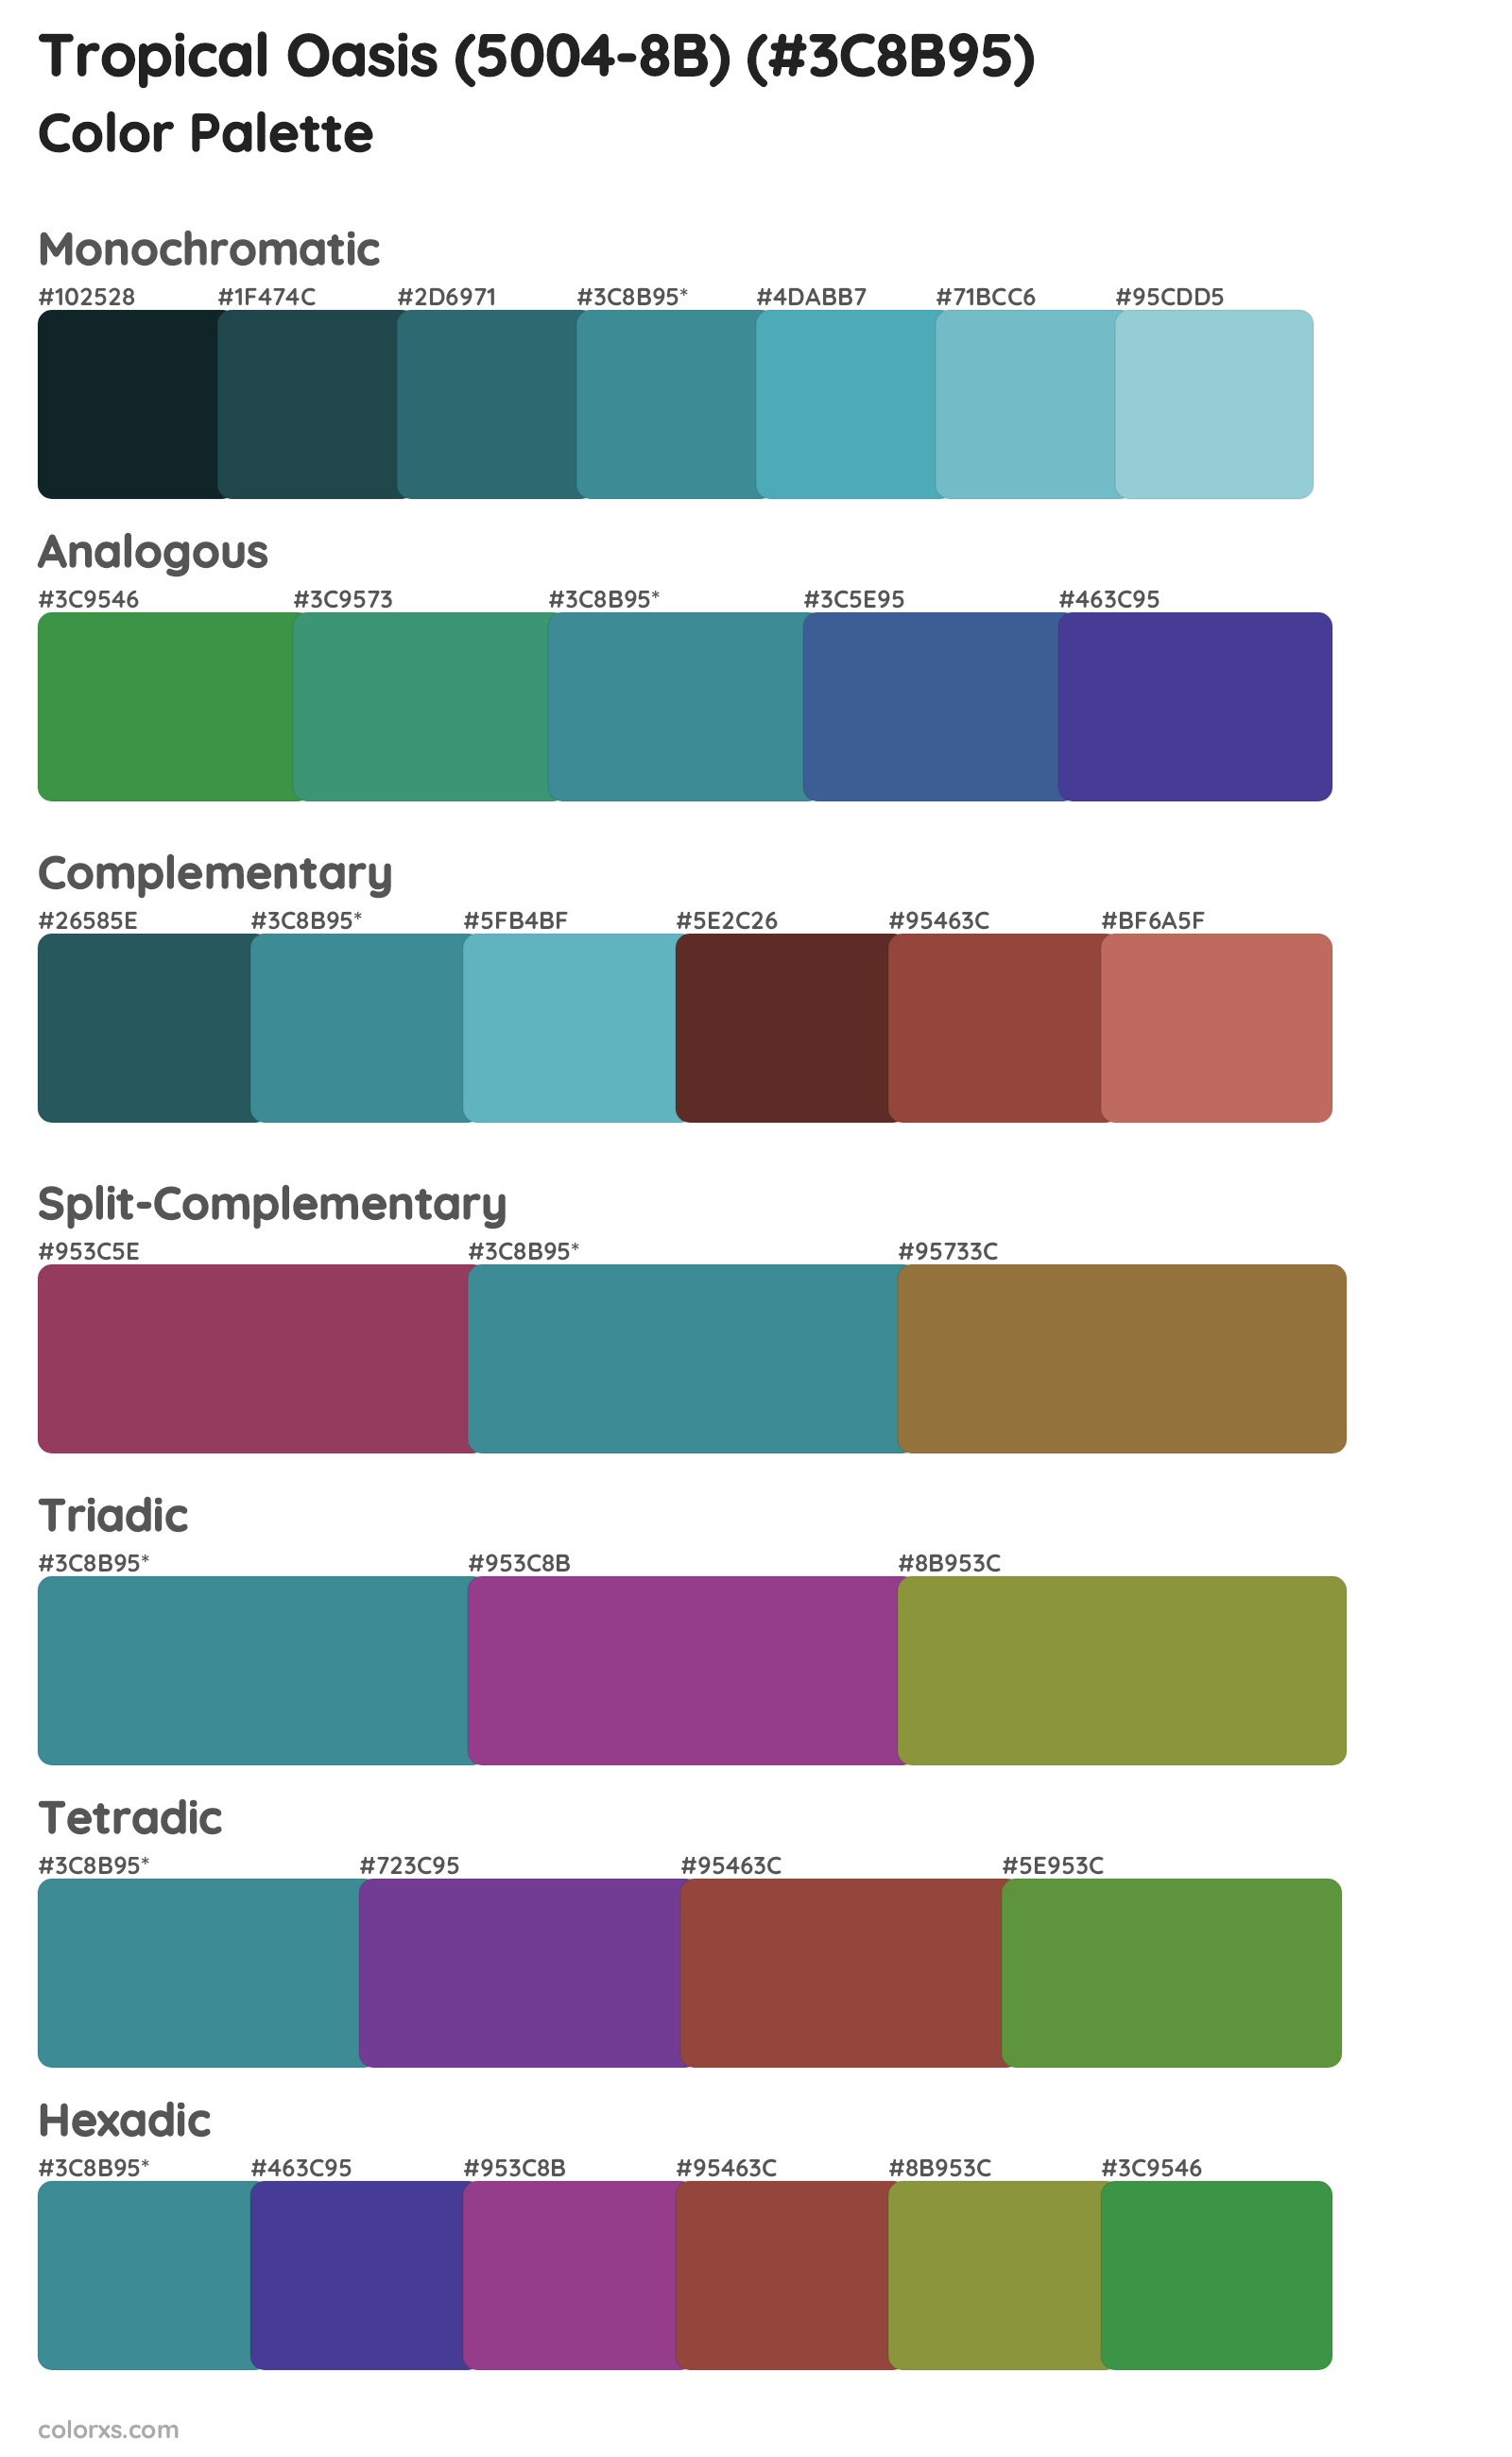 Tropical Oasis (5004-8B) Color Scheme Palettes